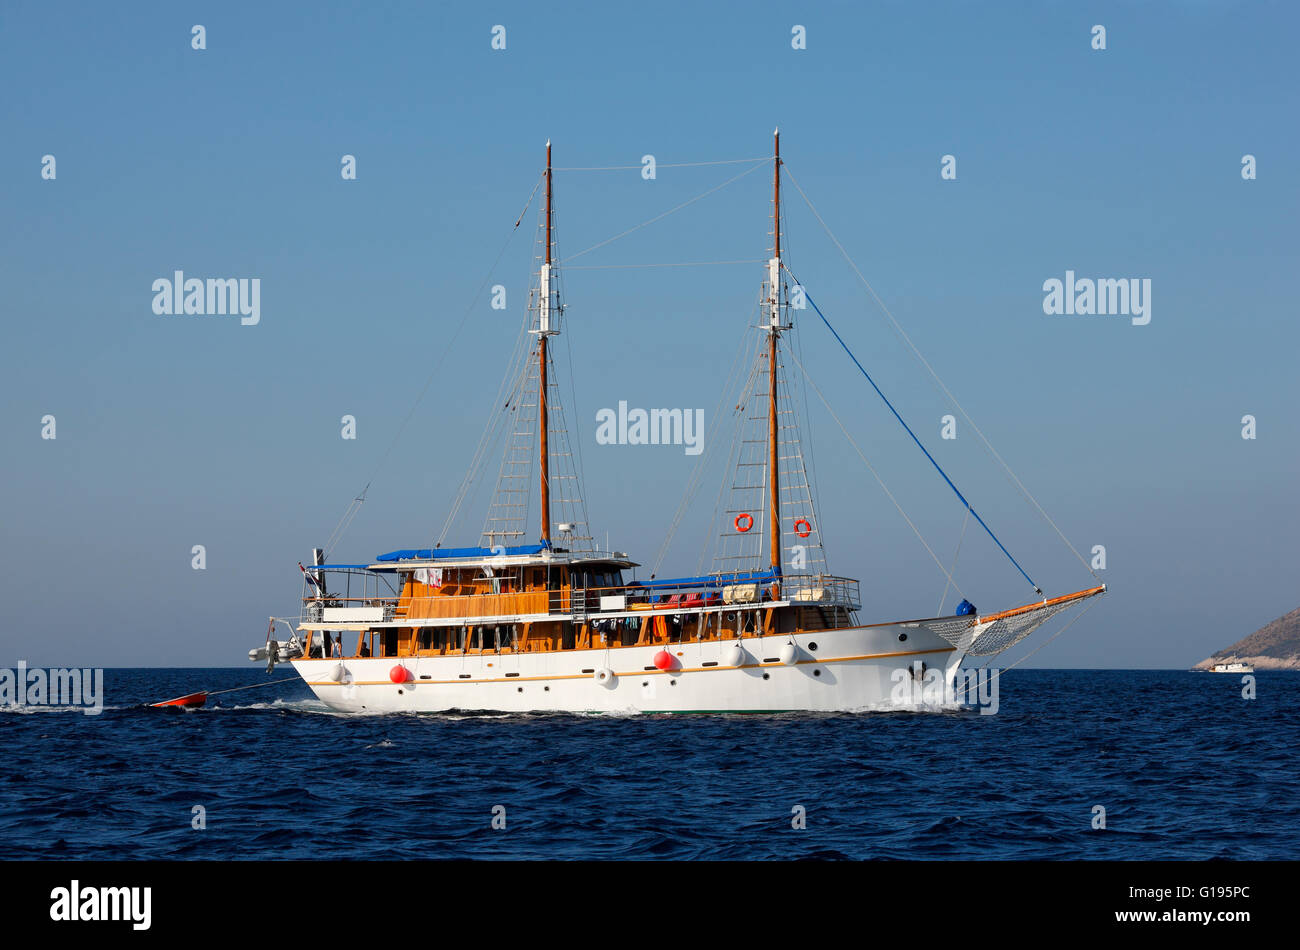 Un bateau de tourisme la voile dans la mer Adriatique, la Croatie Banque D'Images